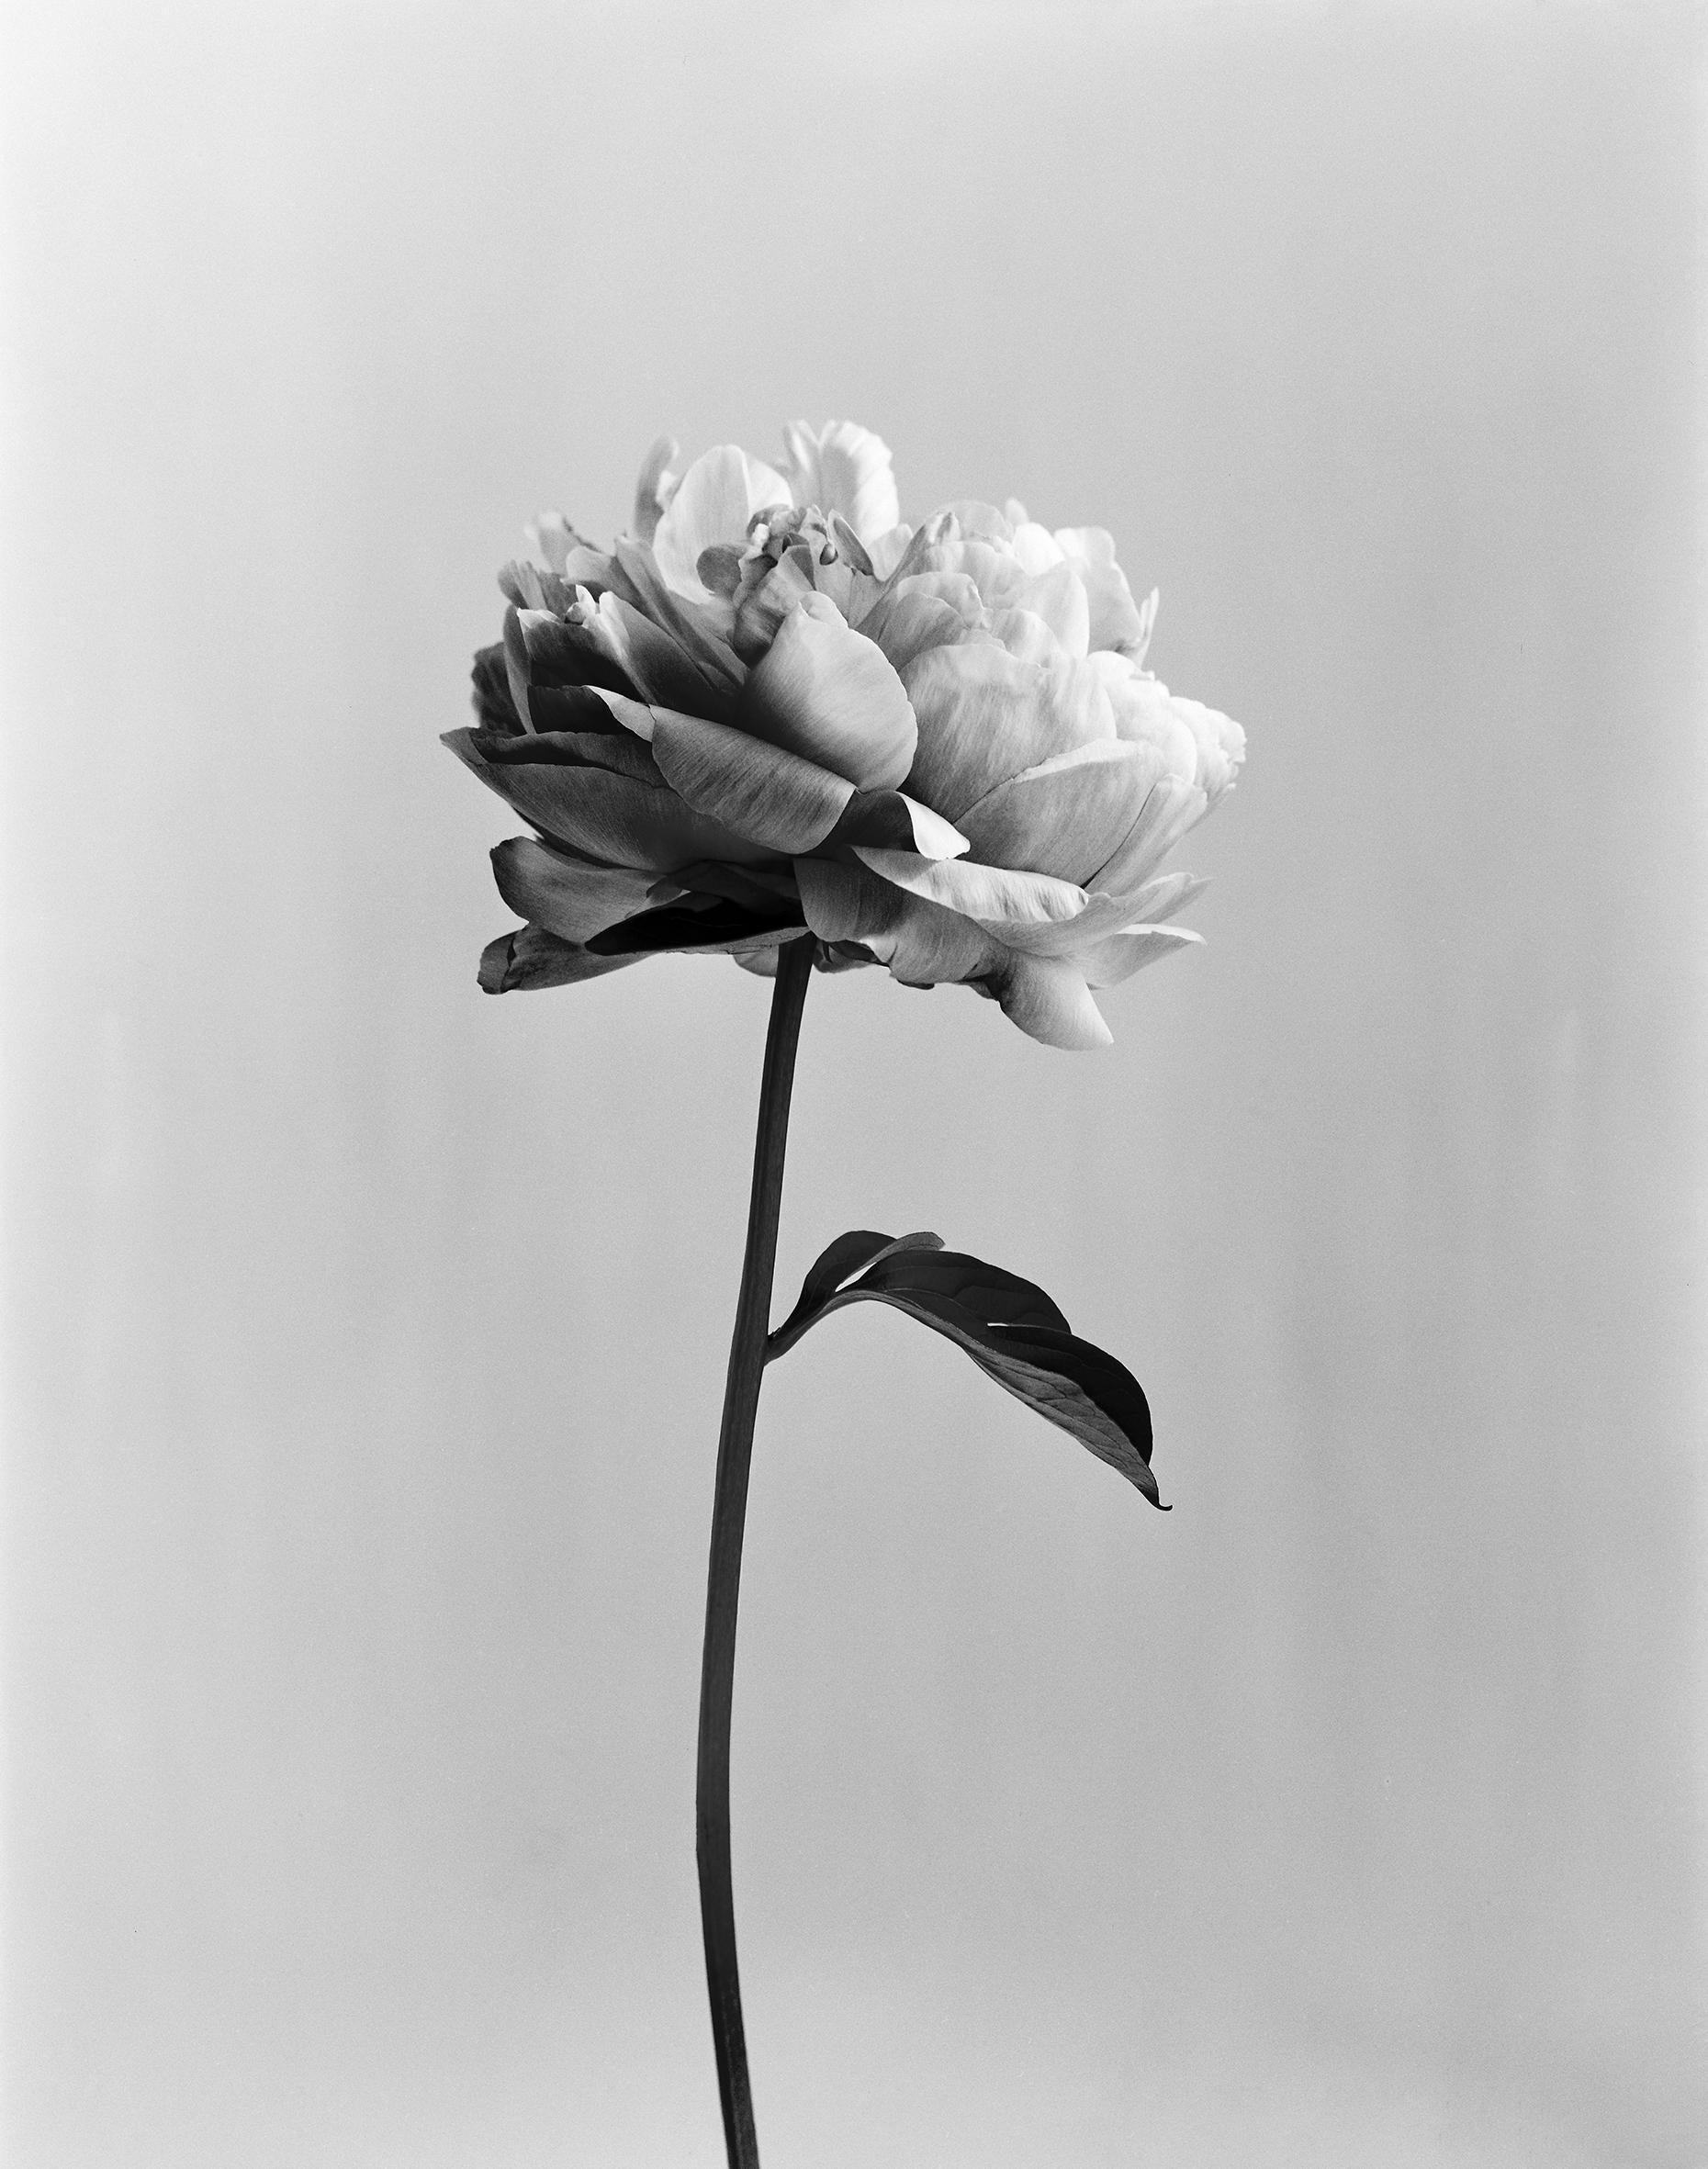 Ugne Pouwell Black and White Photograph – Peony no.3 – analoge schwarz-weiße Blumenfotografie, limitierte Auflage von 20 Stück